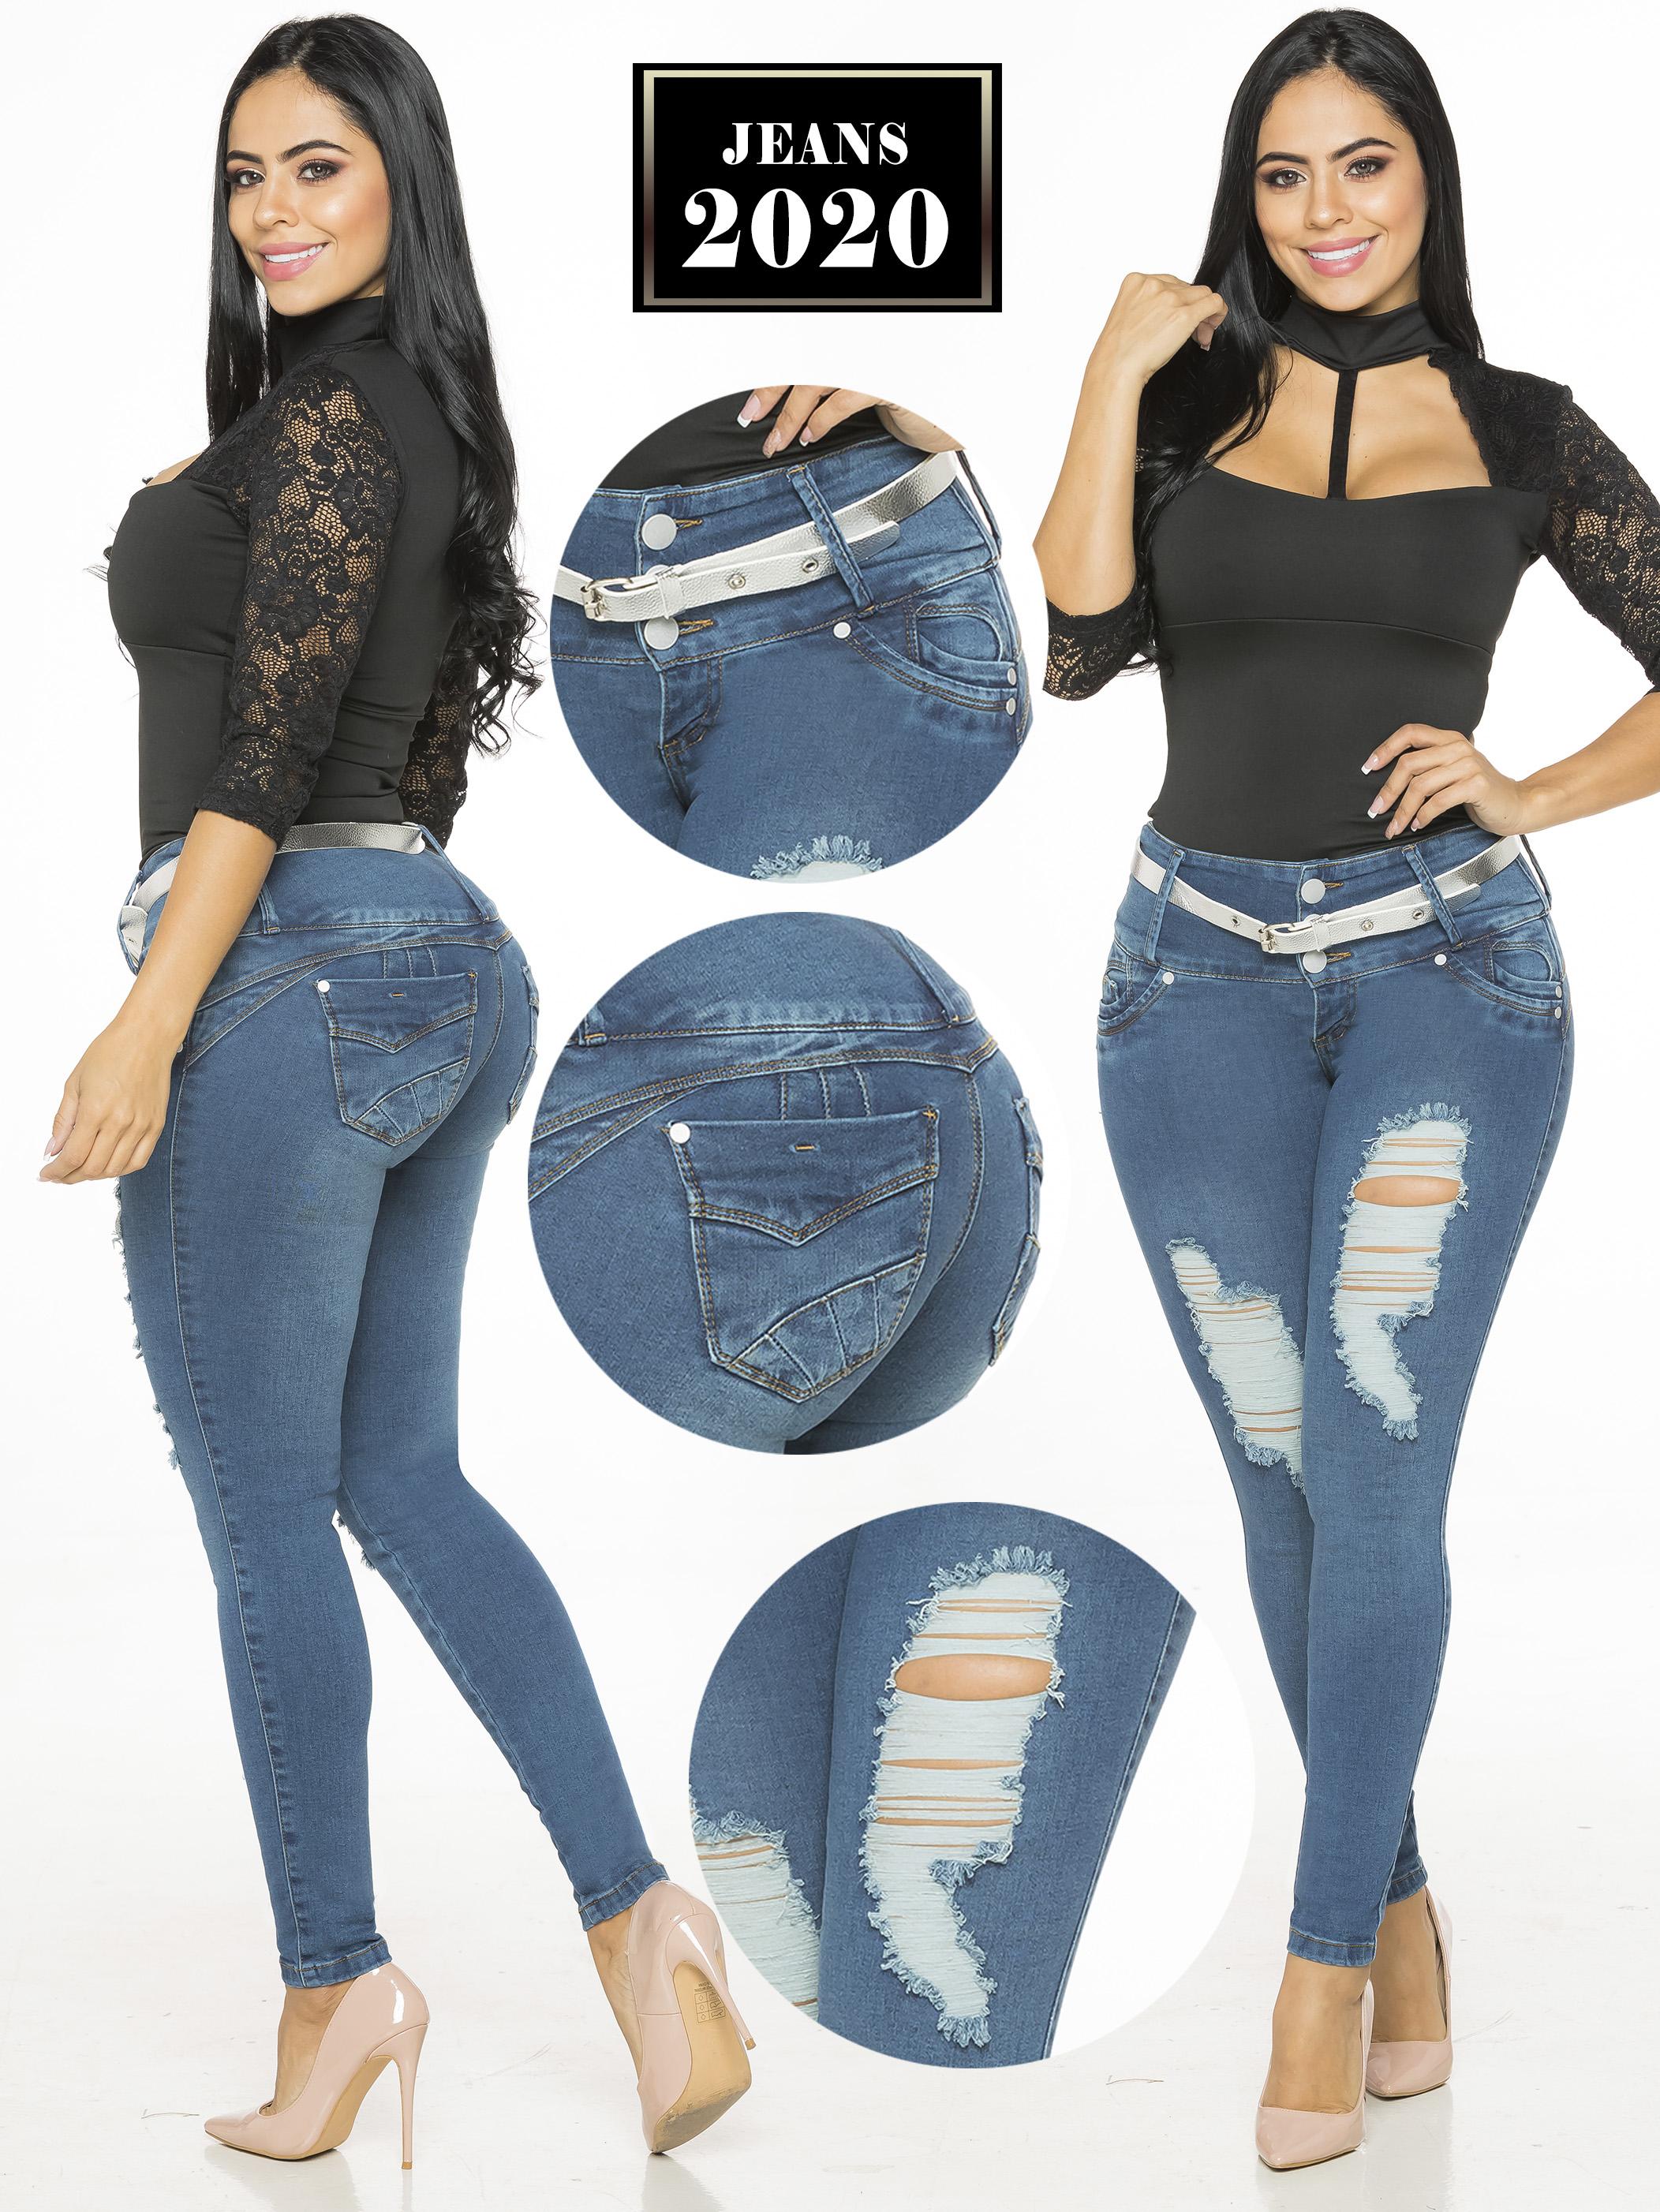 Jeans Push Up Colombiano de Moda horma perfecta